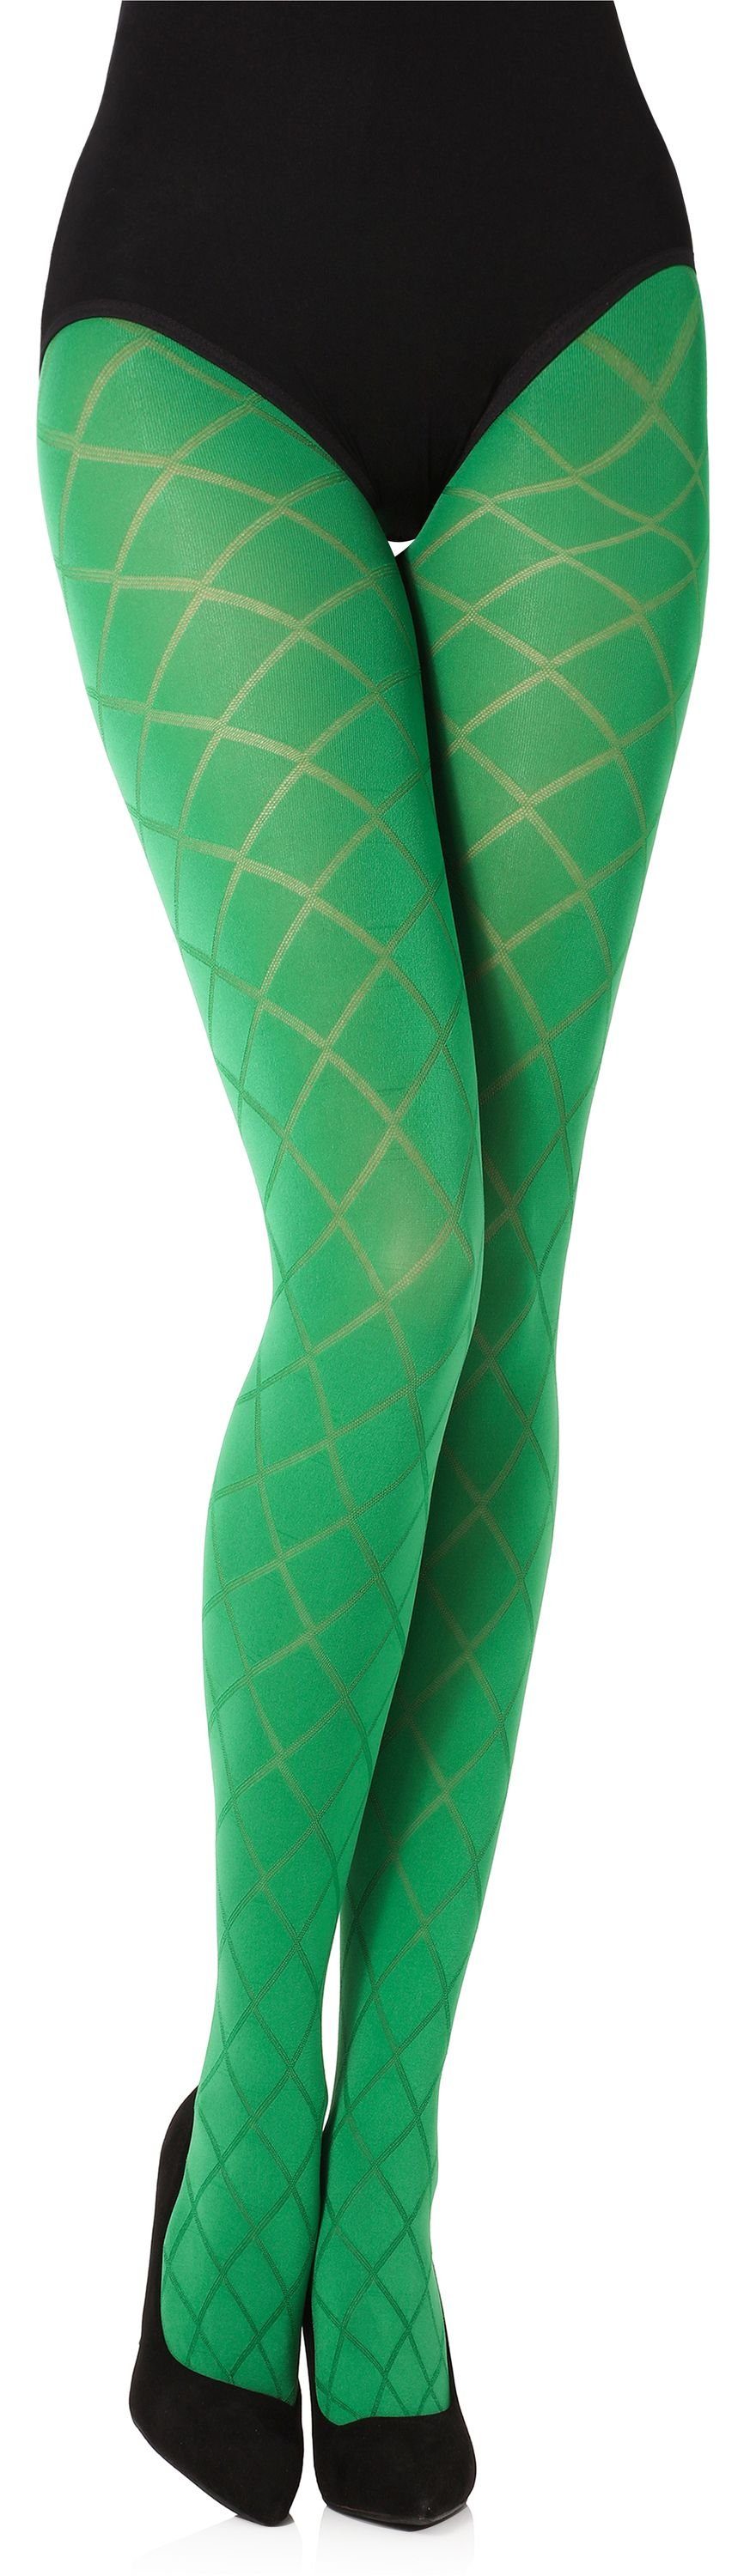 Grüne Strumpfhosen für Damen online kaufen | OTTO